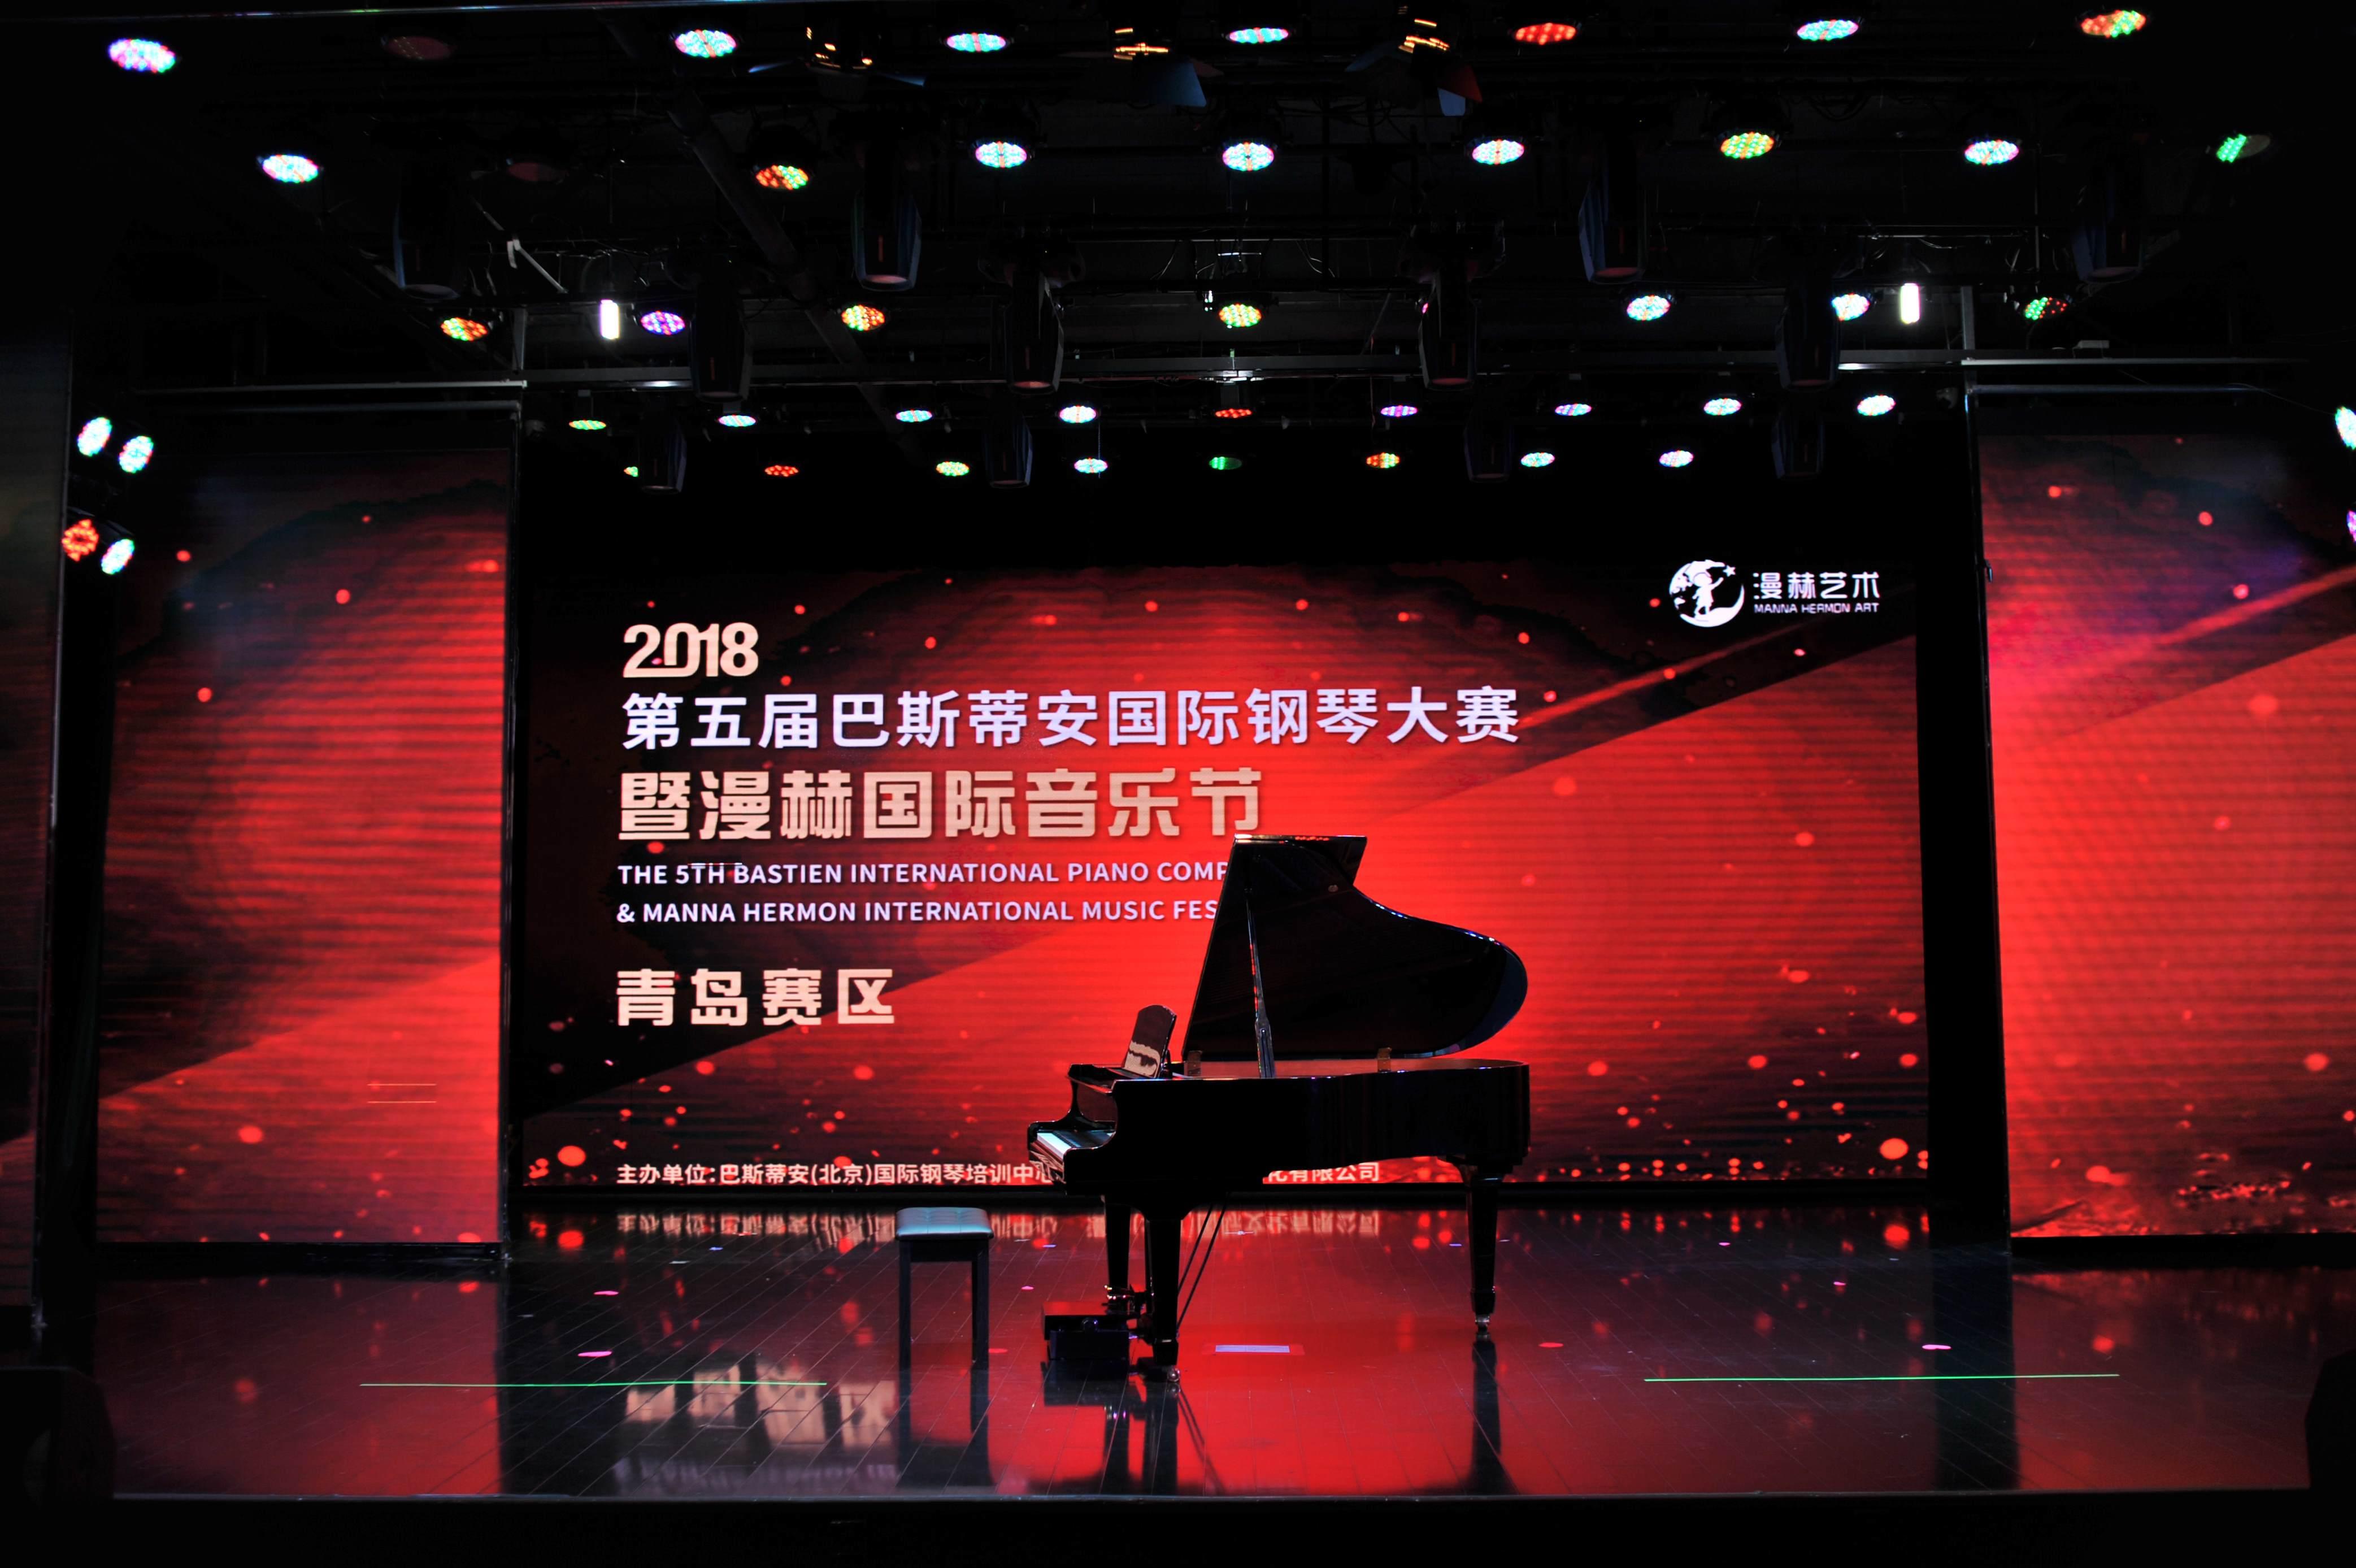 第五届巴斯蒂安国际钢琴大赛青岛赛区已经打响